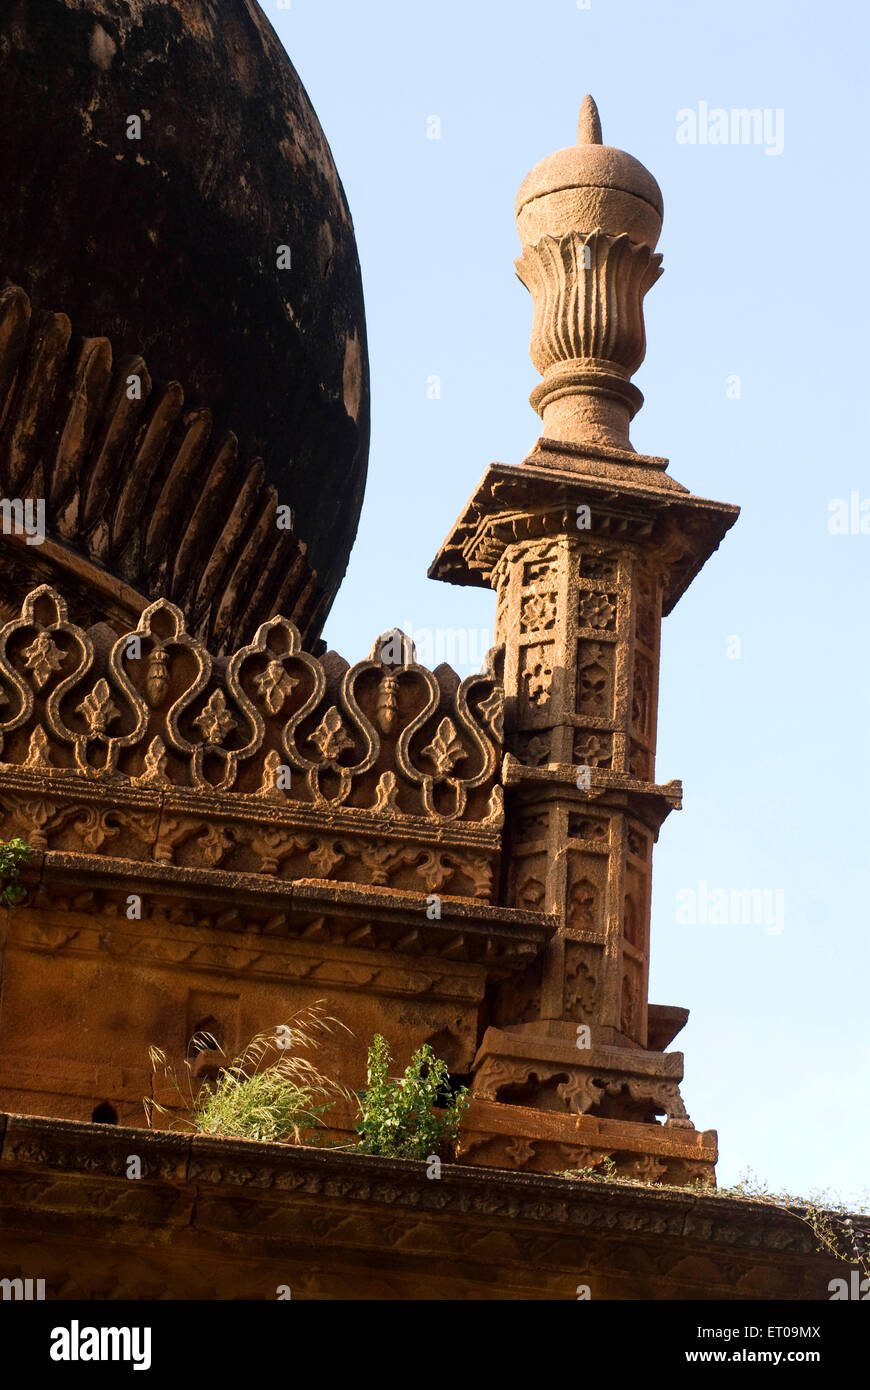 La moschea di Adilshai volte ; gumbaz al livello inferiore ; Abdul Aziz arco sollevata in memoria della moglie ; Badami ; Karnataka ; India Foto Stock